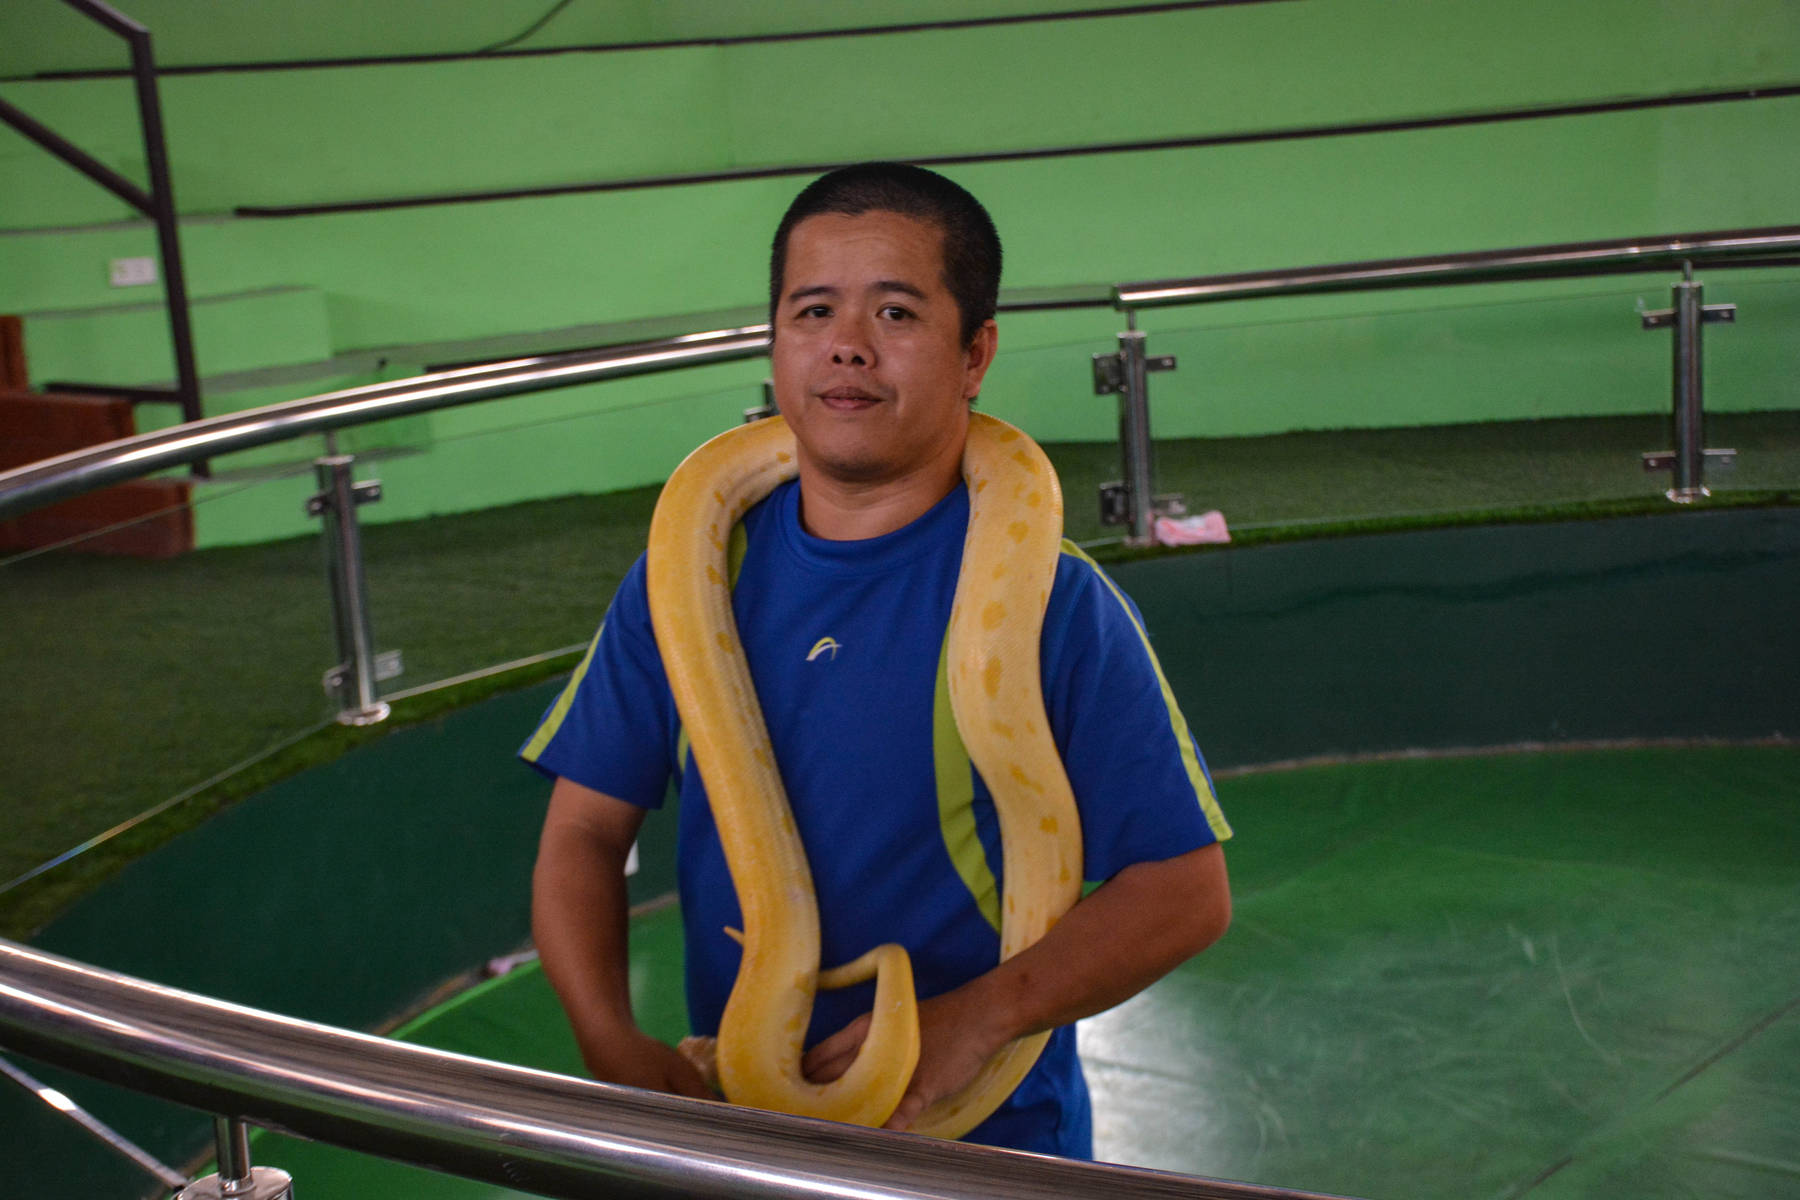 【高清图】泰国皇家毒蛇研究中心戏蛇-中关村在线摄影论坛